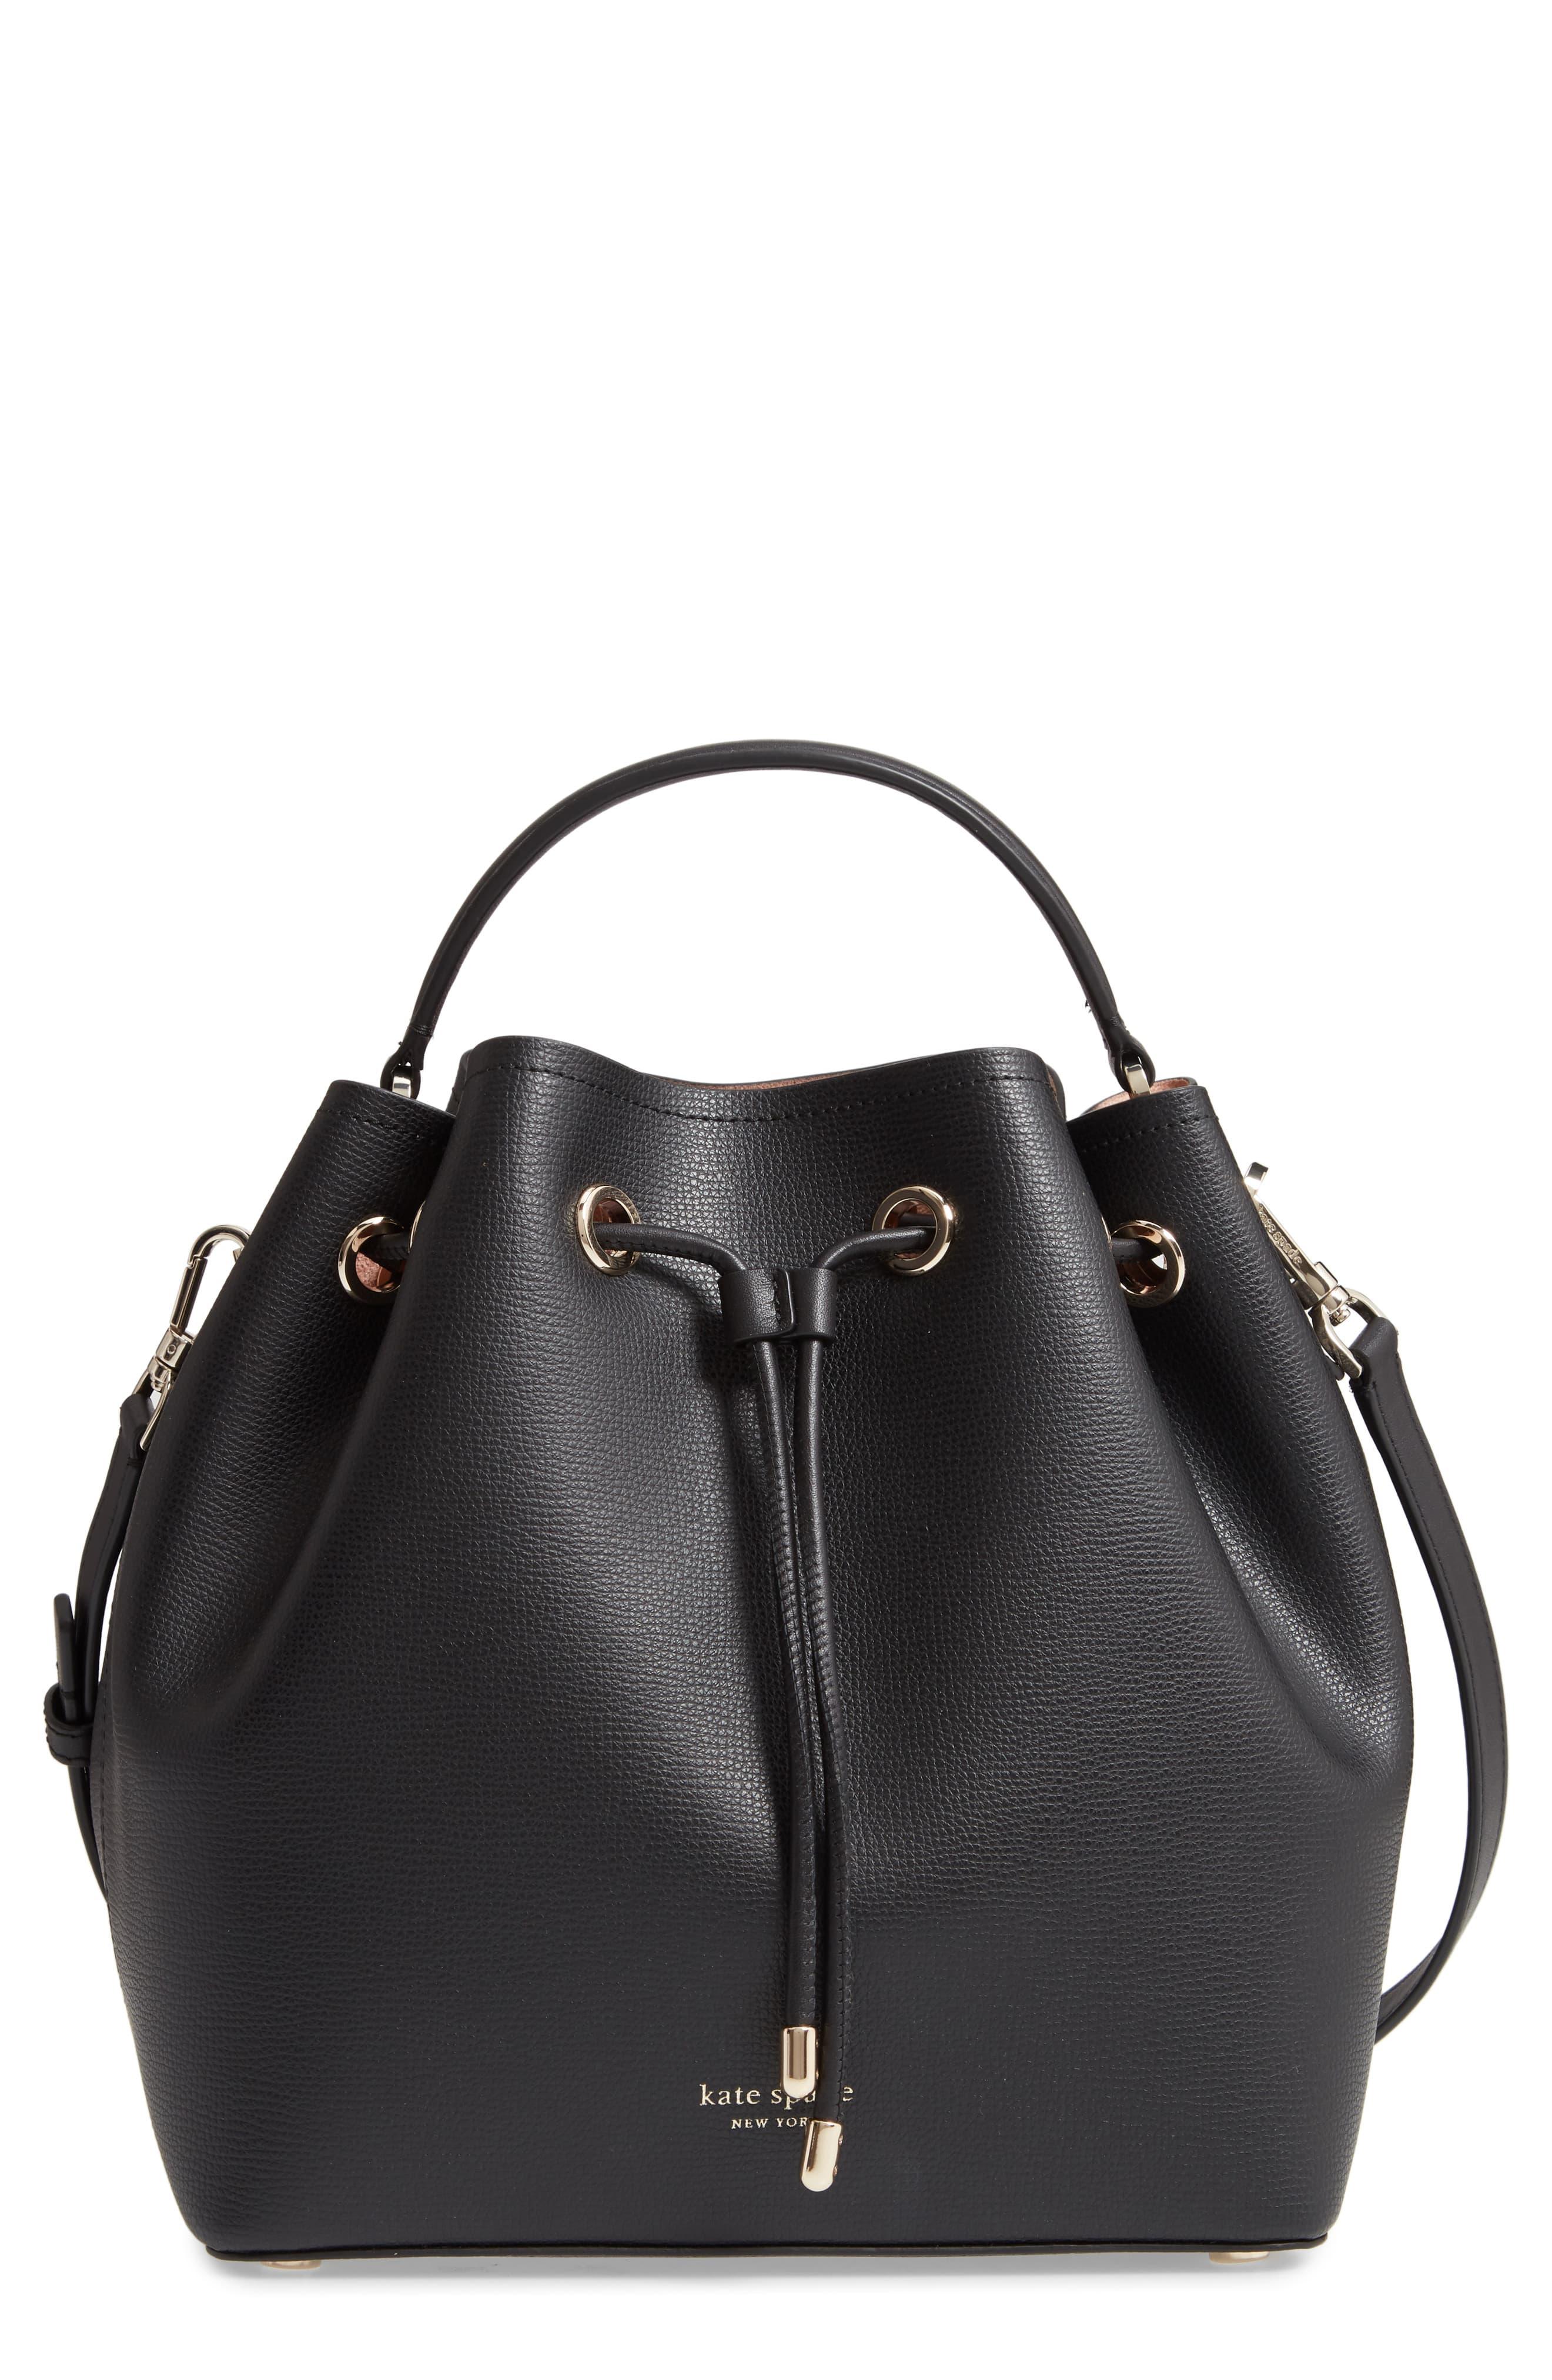 Kate Spade Vivian Medium Bucket Bag In Black Leather - Lyst